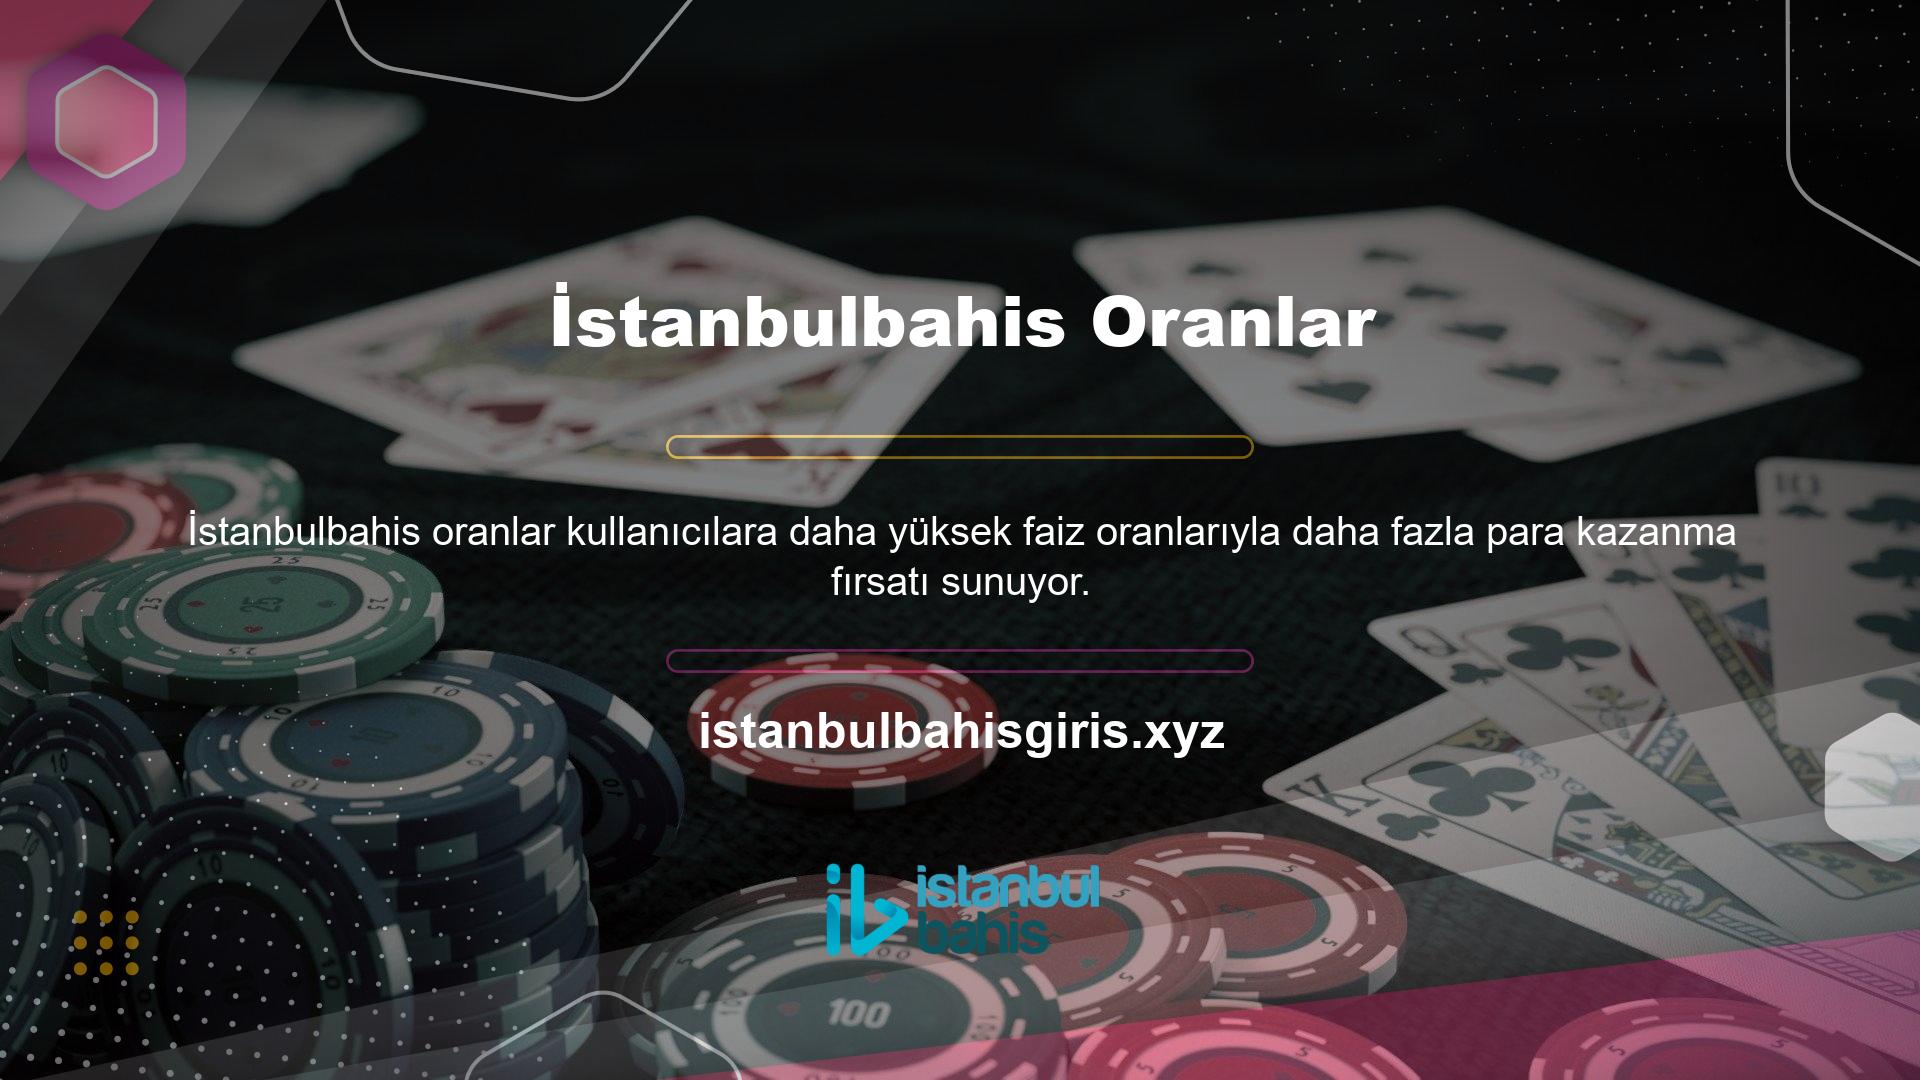 İstanbulbahis değişmez güven adresi, özgünlüğünü her gün her kullanıcıya kanıtlıyor